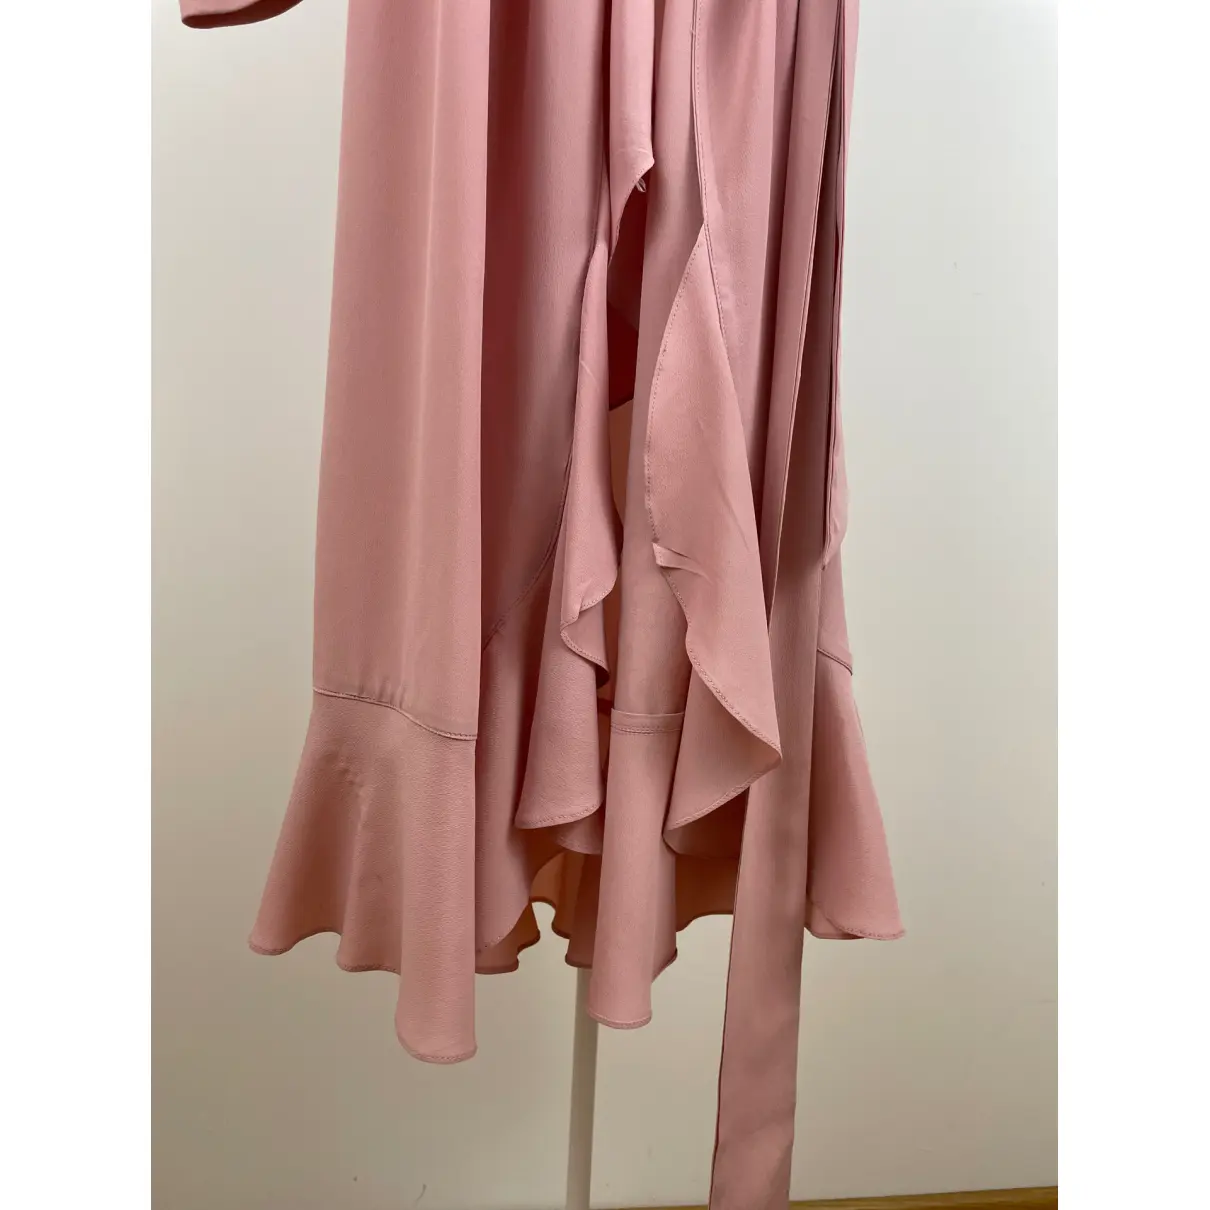 Silk mid-length dress Erika Cavallini